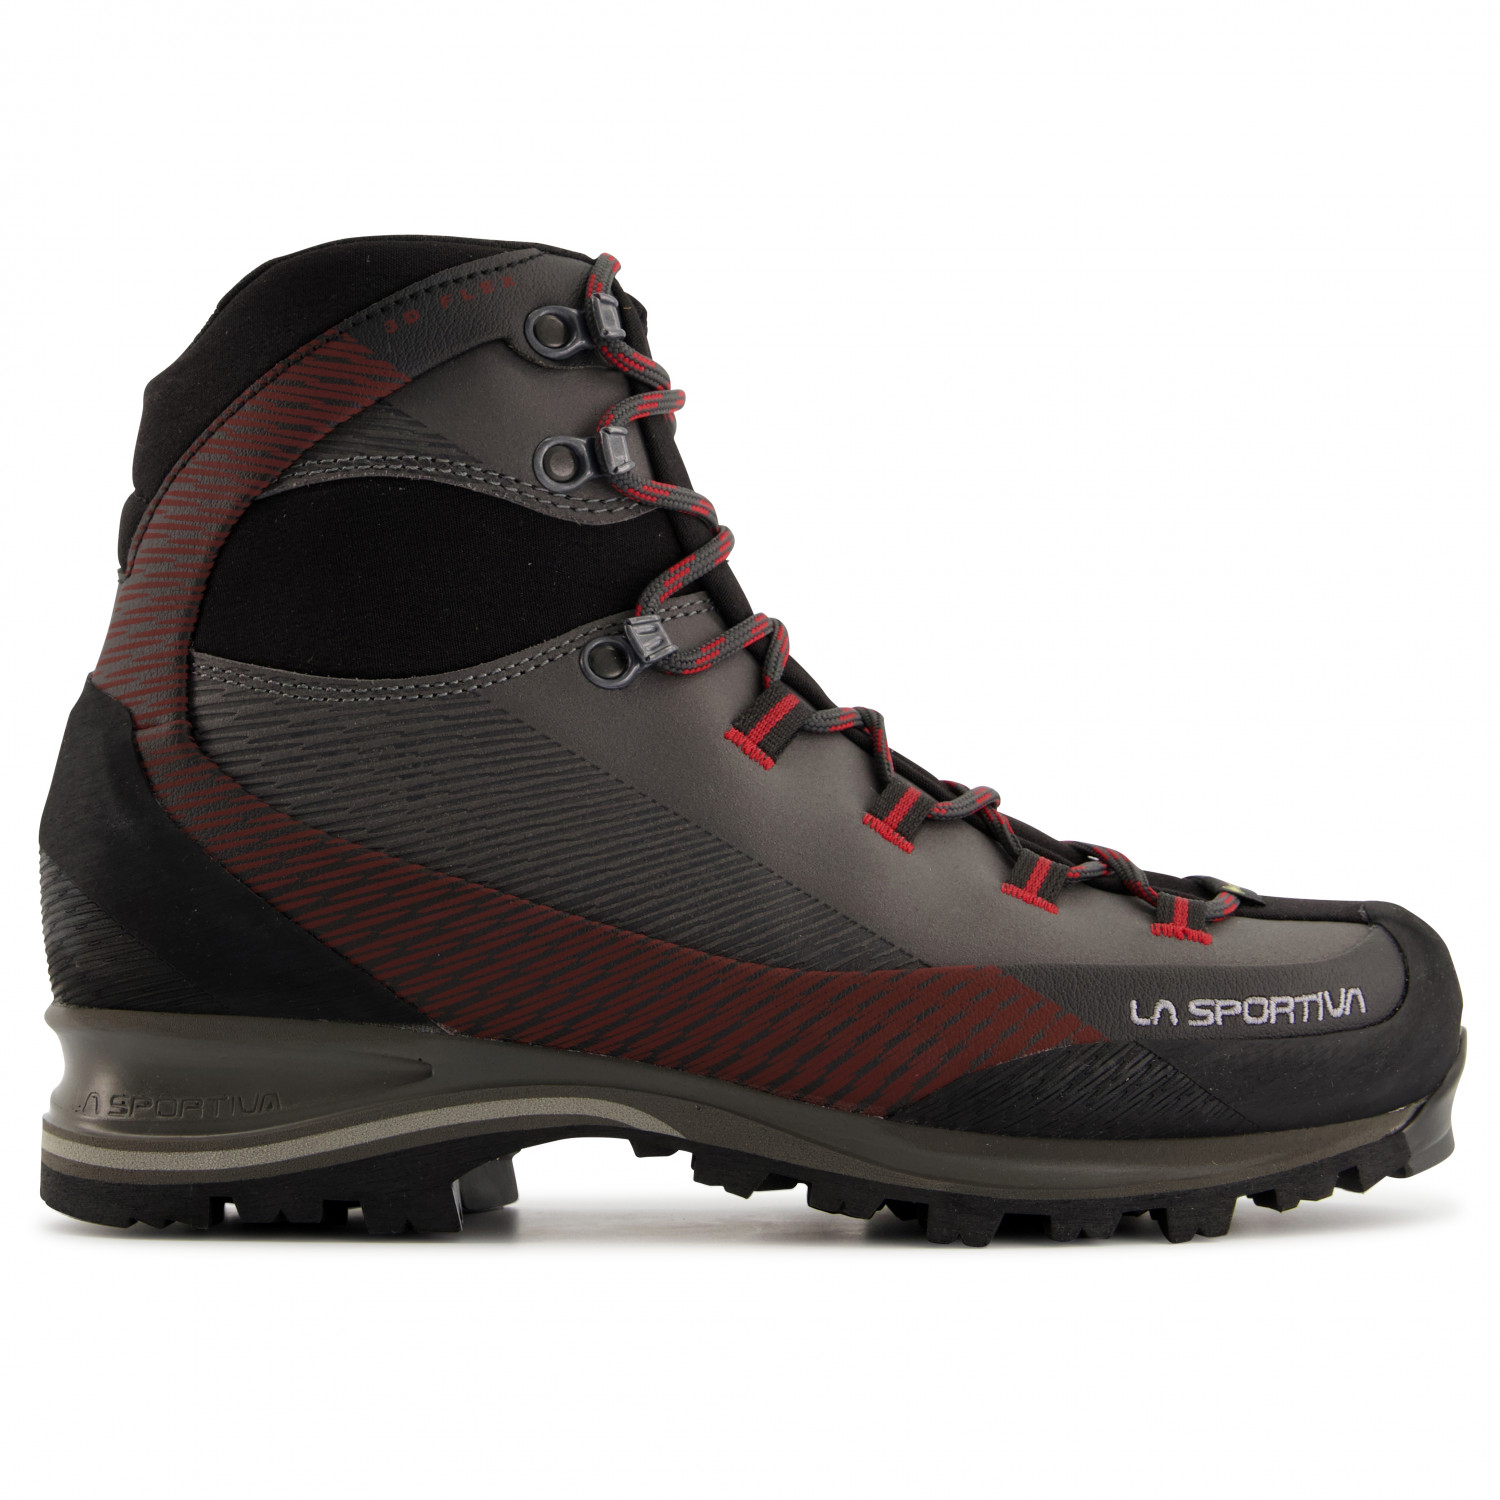 Ботинки для прогулки La Sportiva Trango TRK Leather GTX, цвет Carbon/Chili